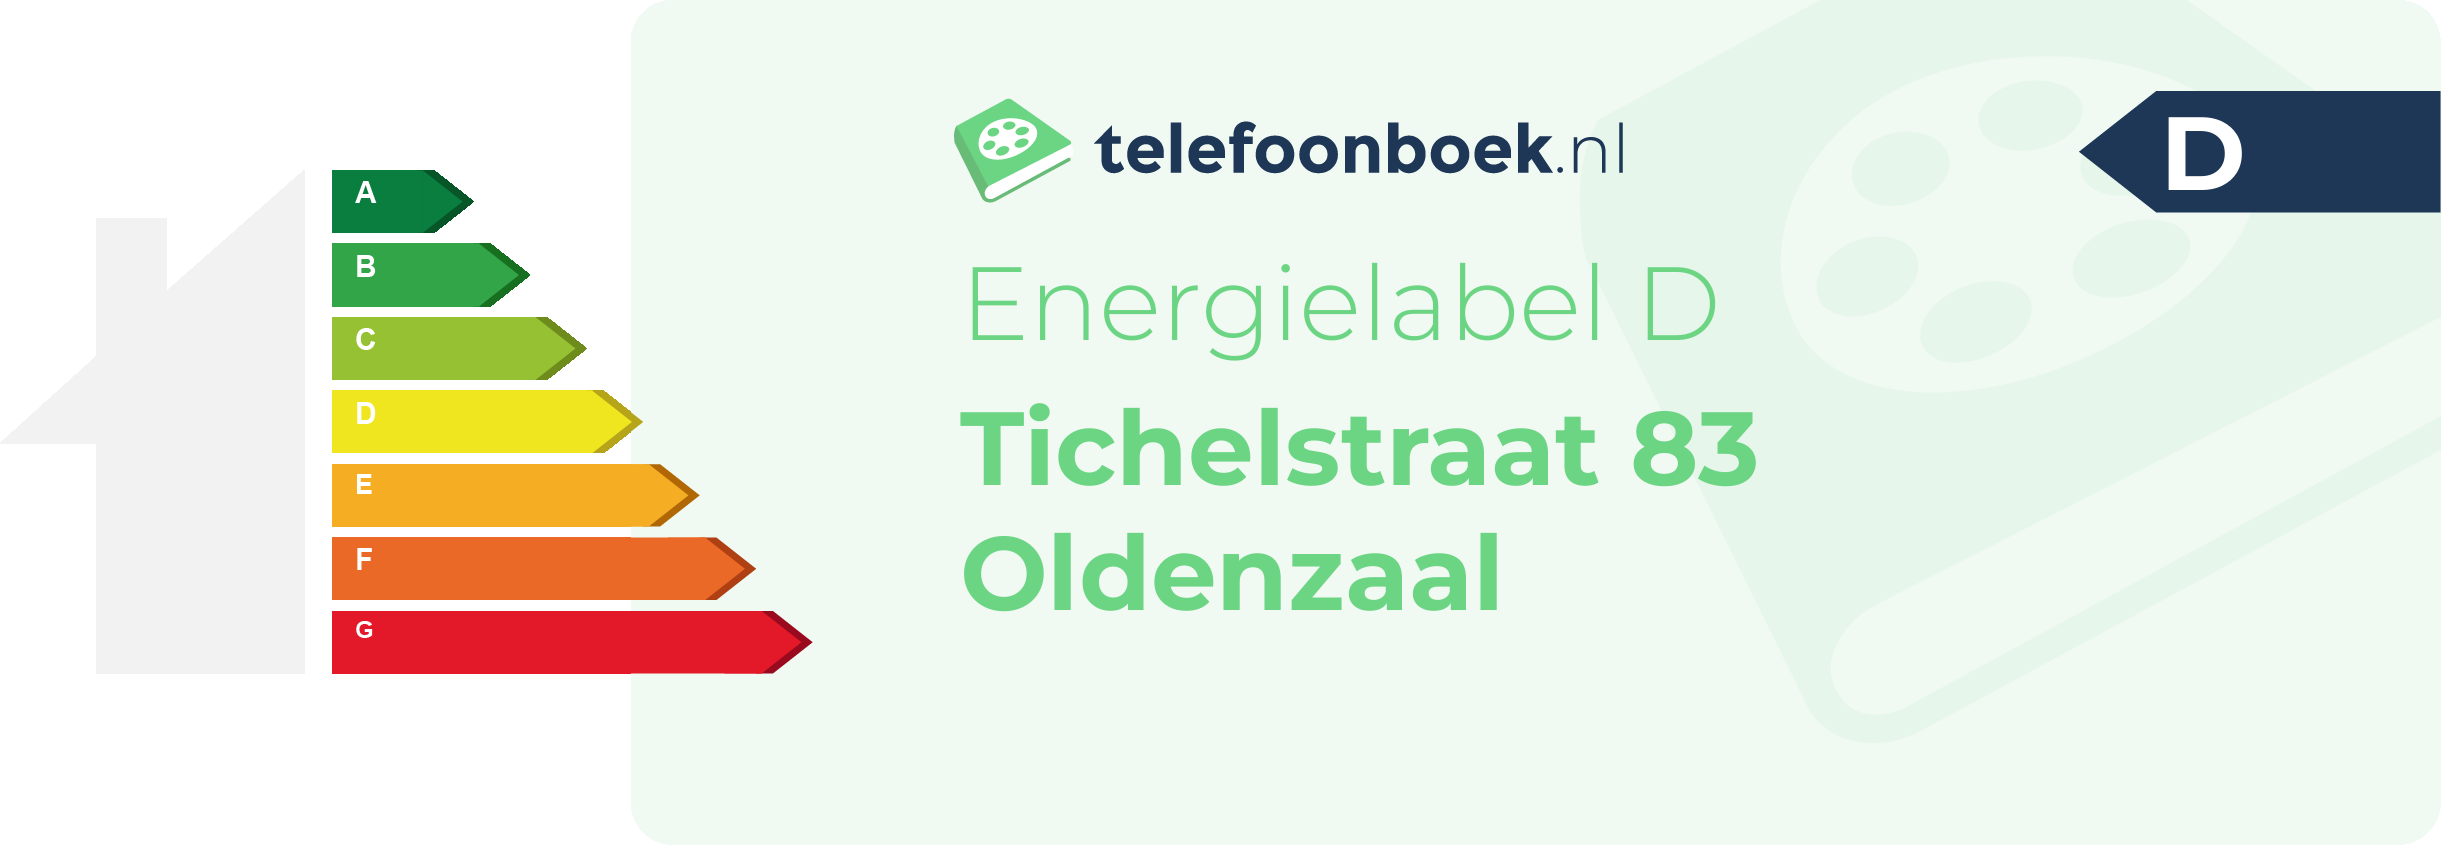 Energielabel Tichelstraat 83 Oldenzaal